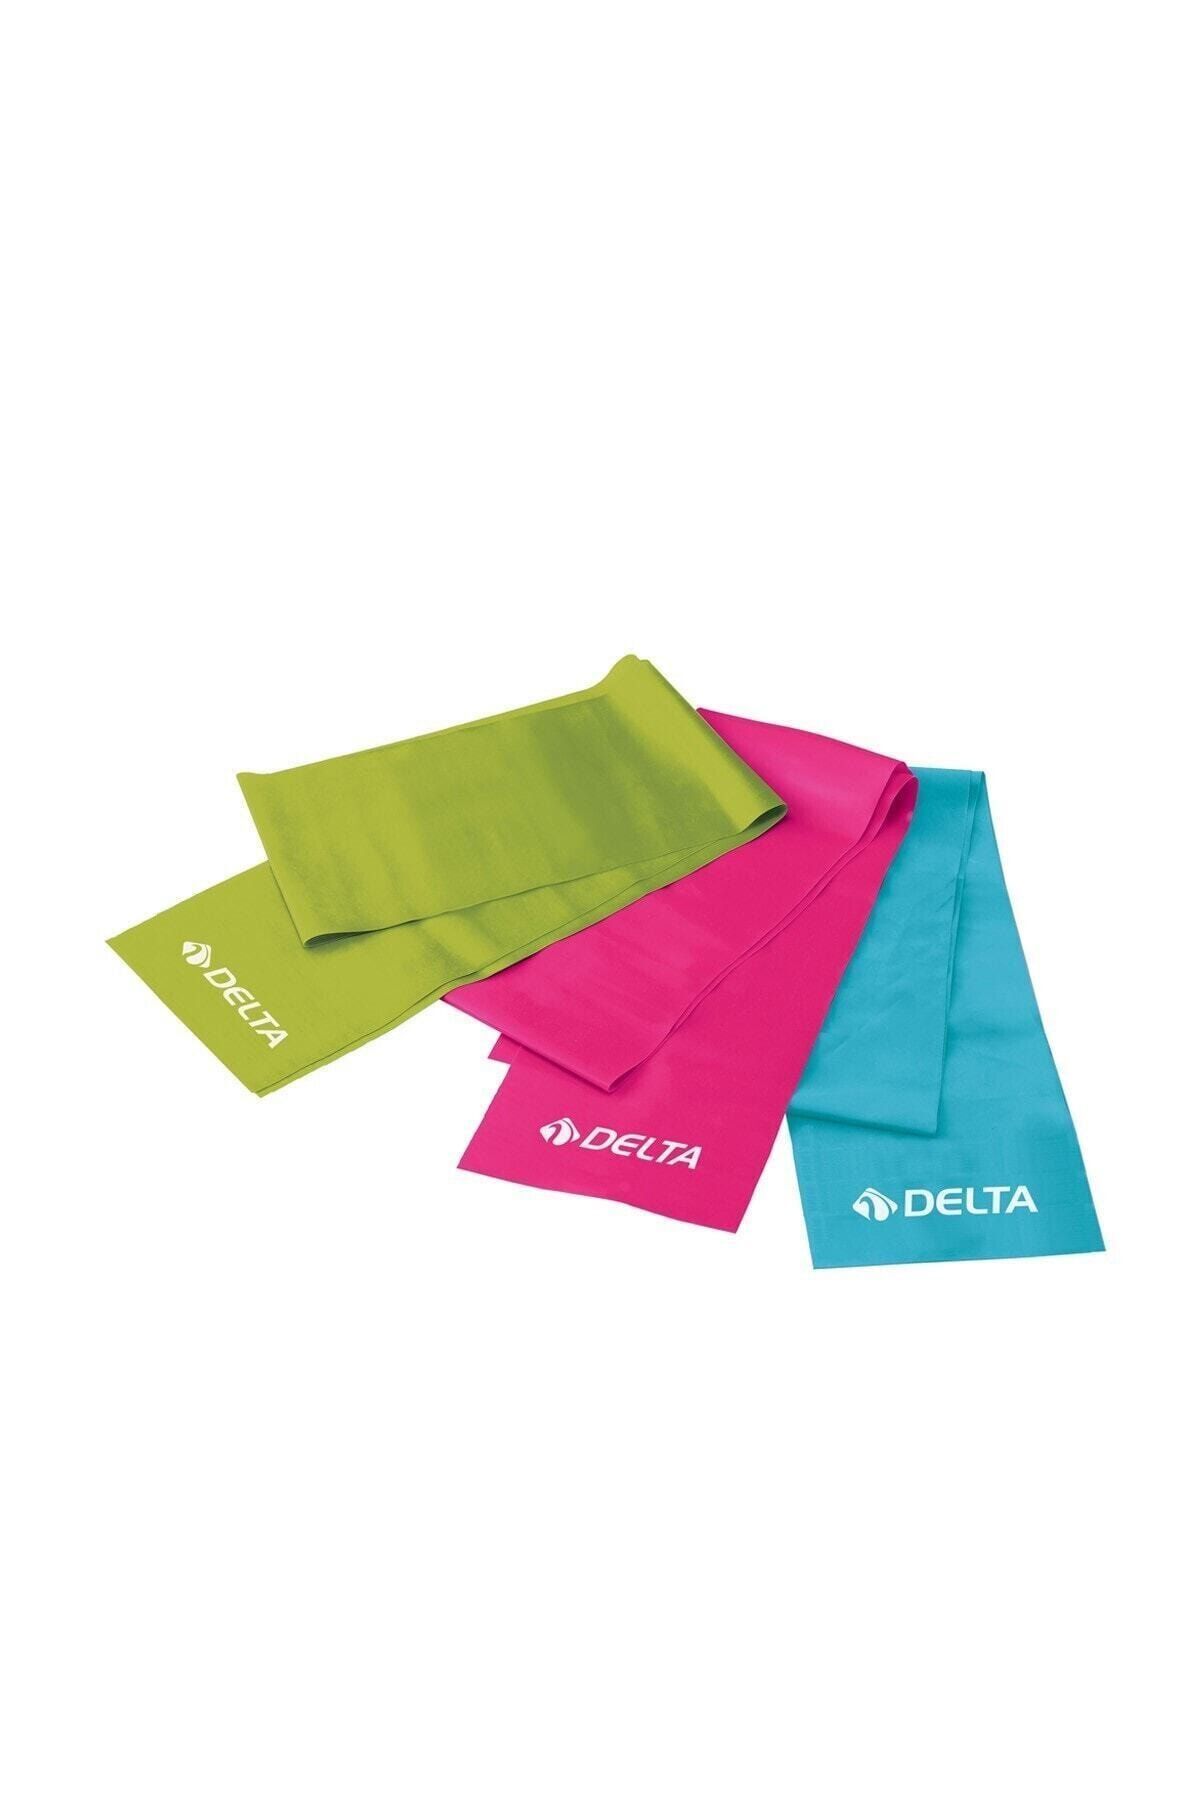 Delta 3 'lü Pilates Bandı  150 cm x 15 cm Egzersiz Direnç Lastiği (Uç Kısmı Açık)